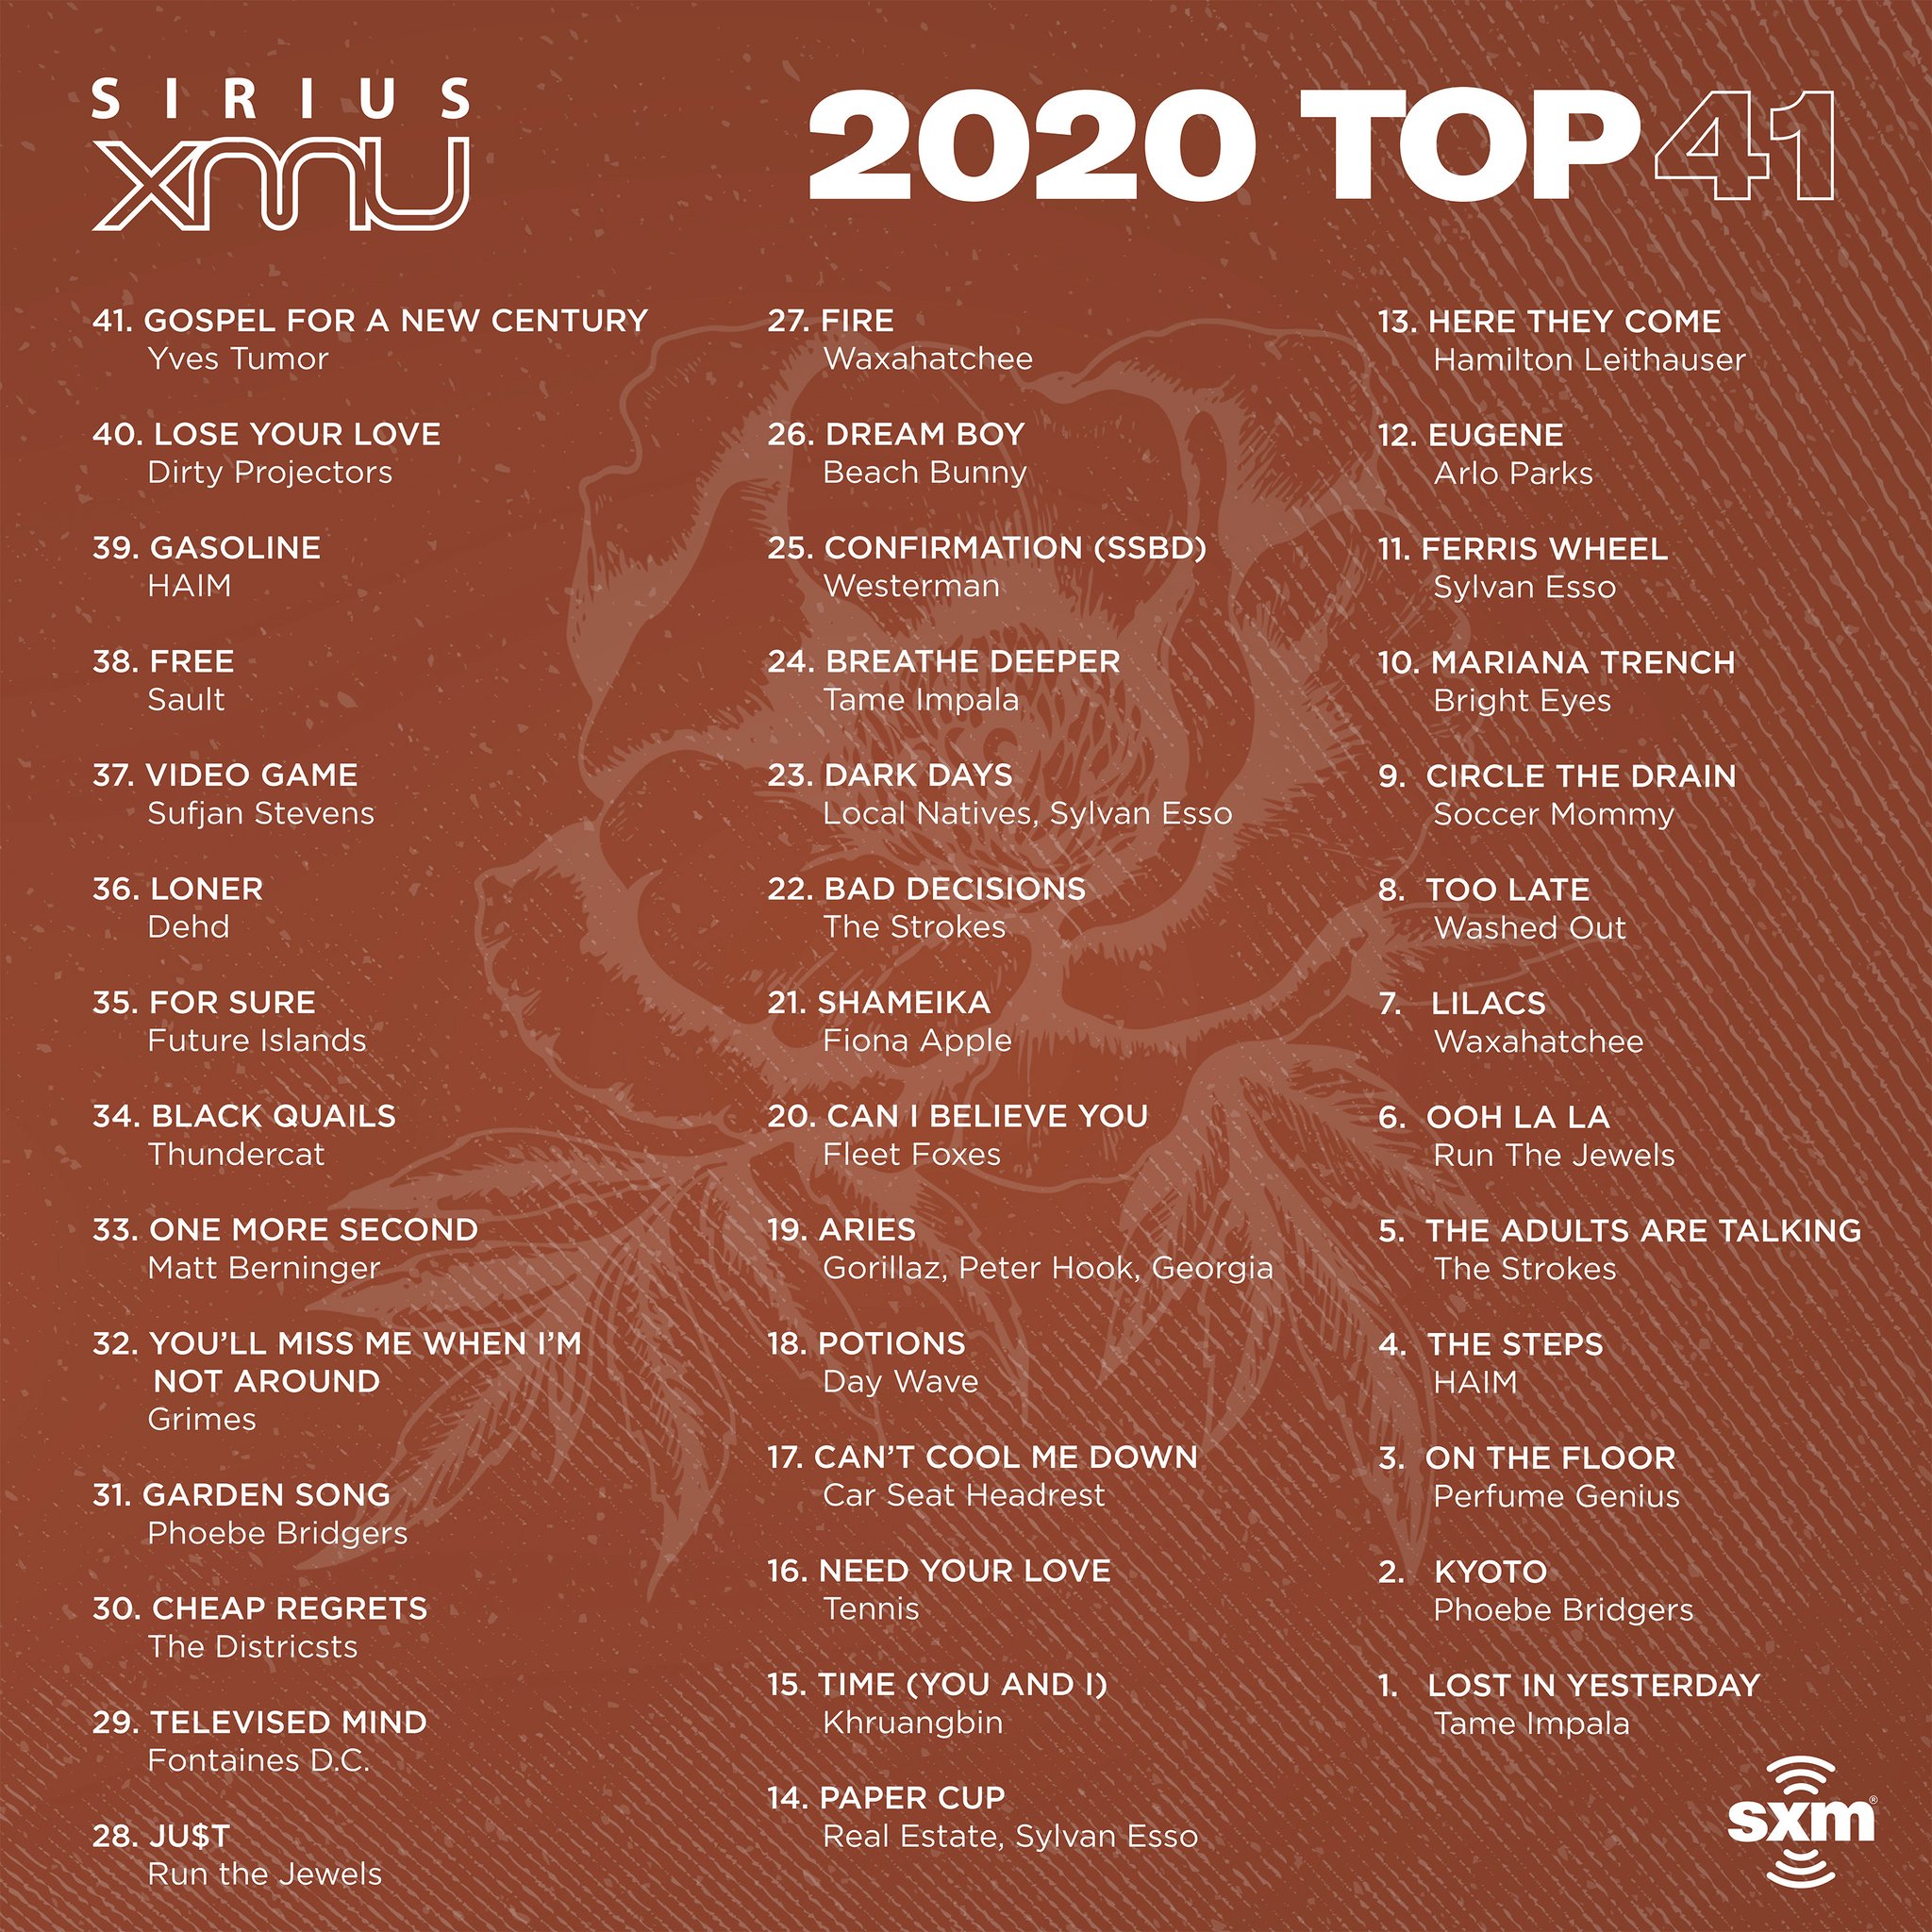 SiriusXMU on Twitter "here's the list...XMU's Top 41 indie songs we